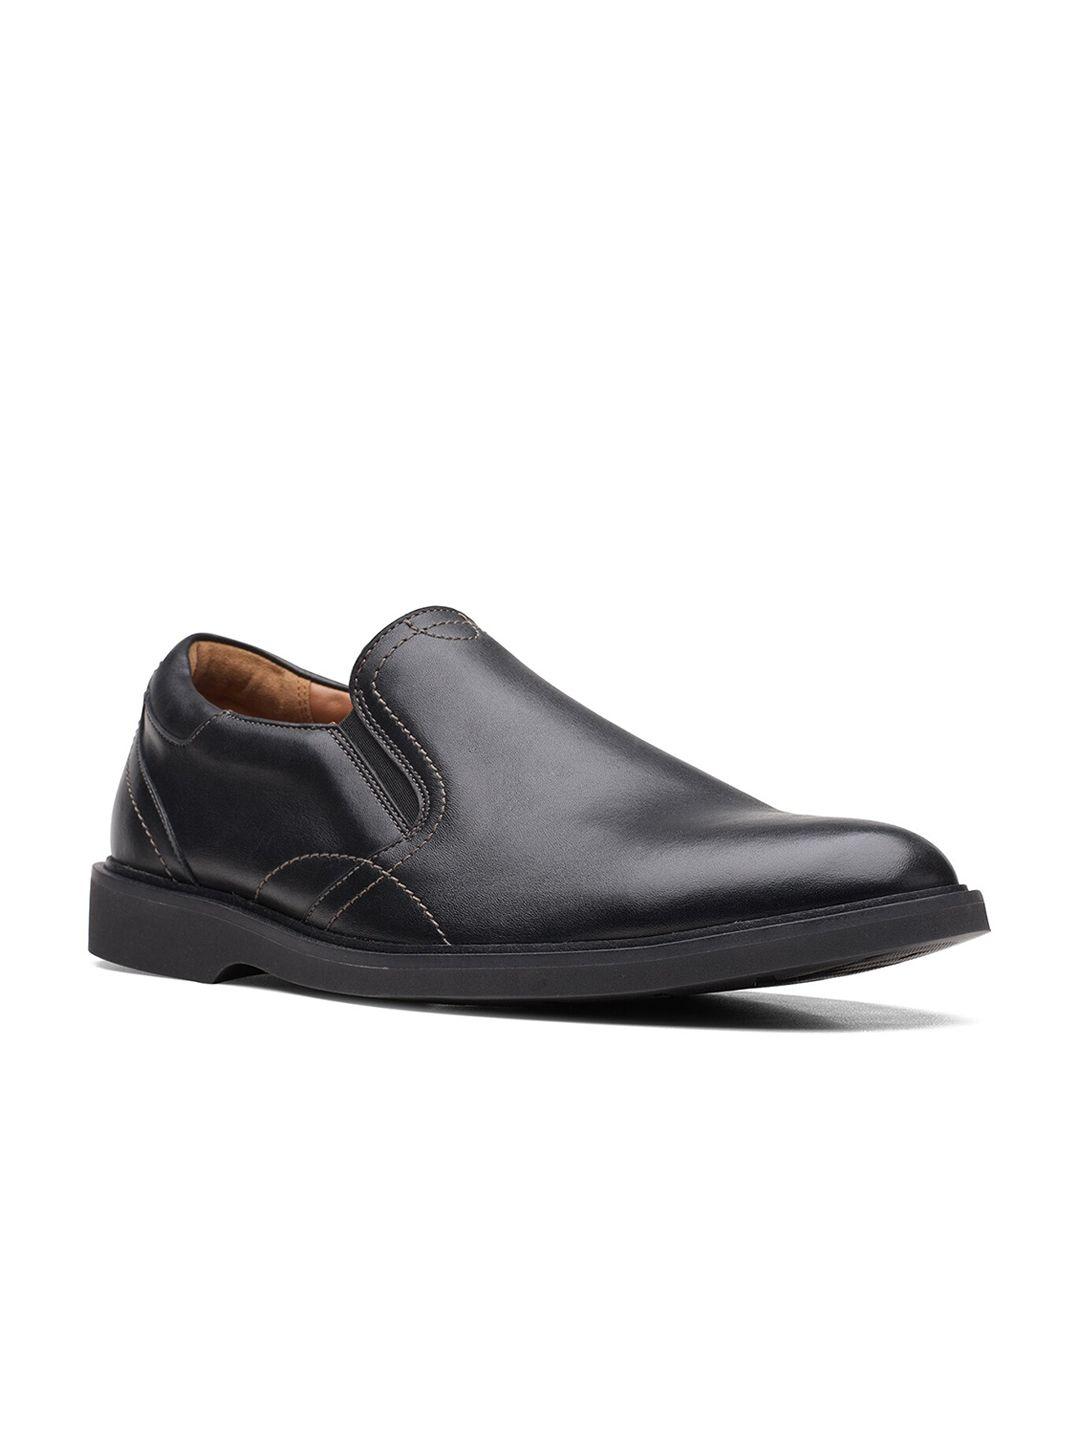 clarks men black solid leather formal slip on shoes